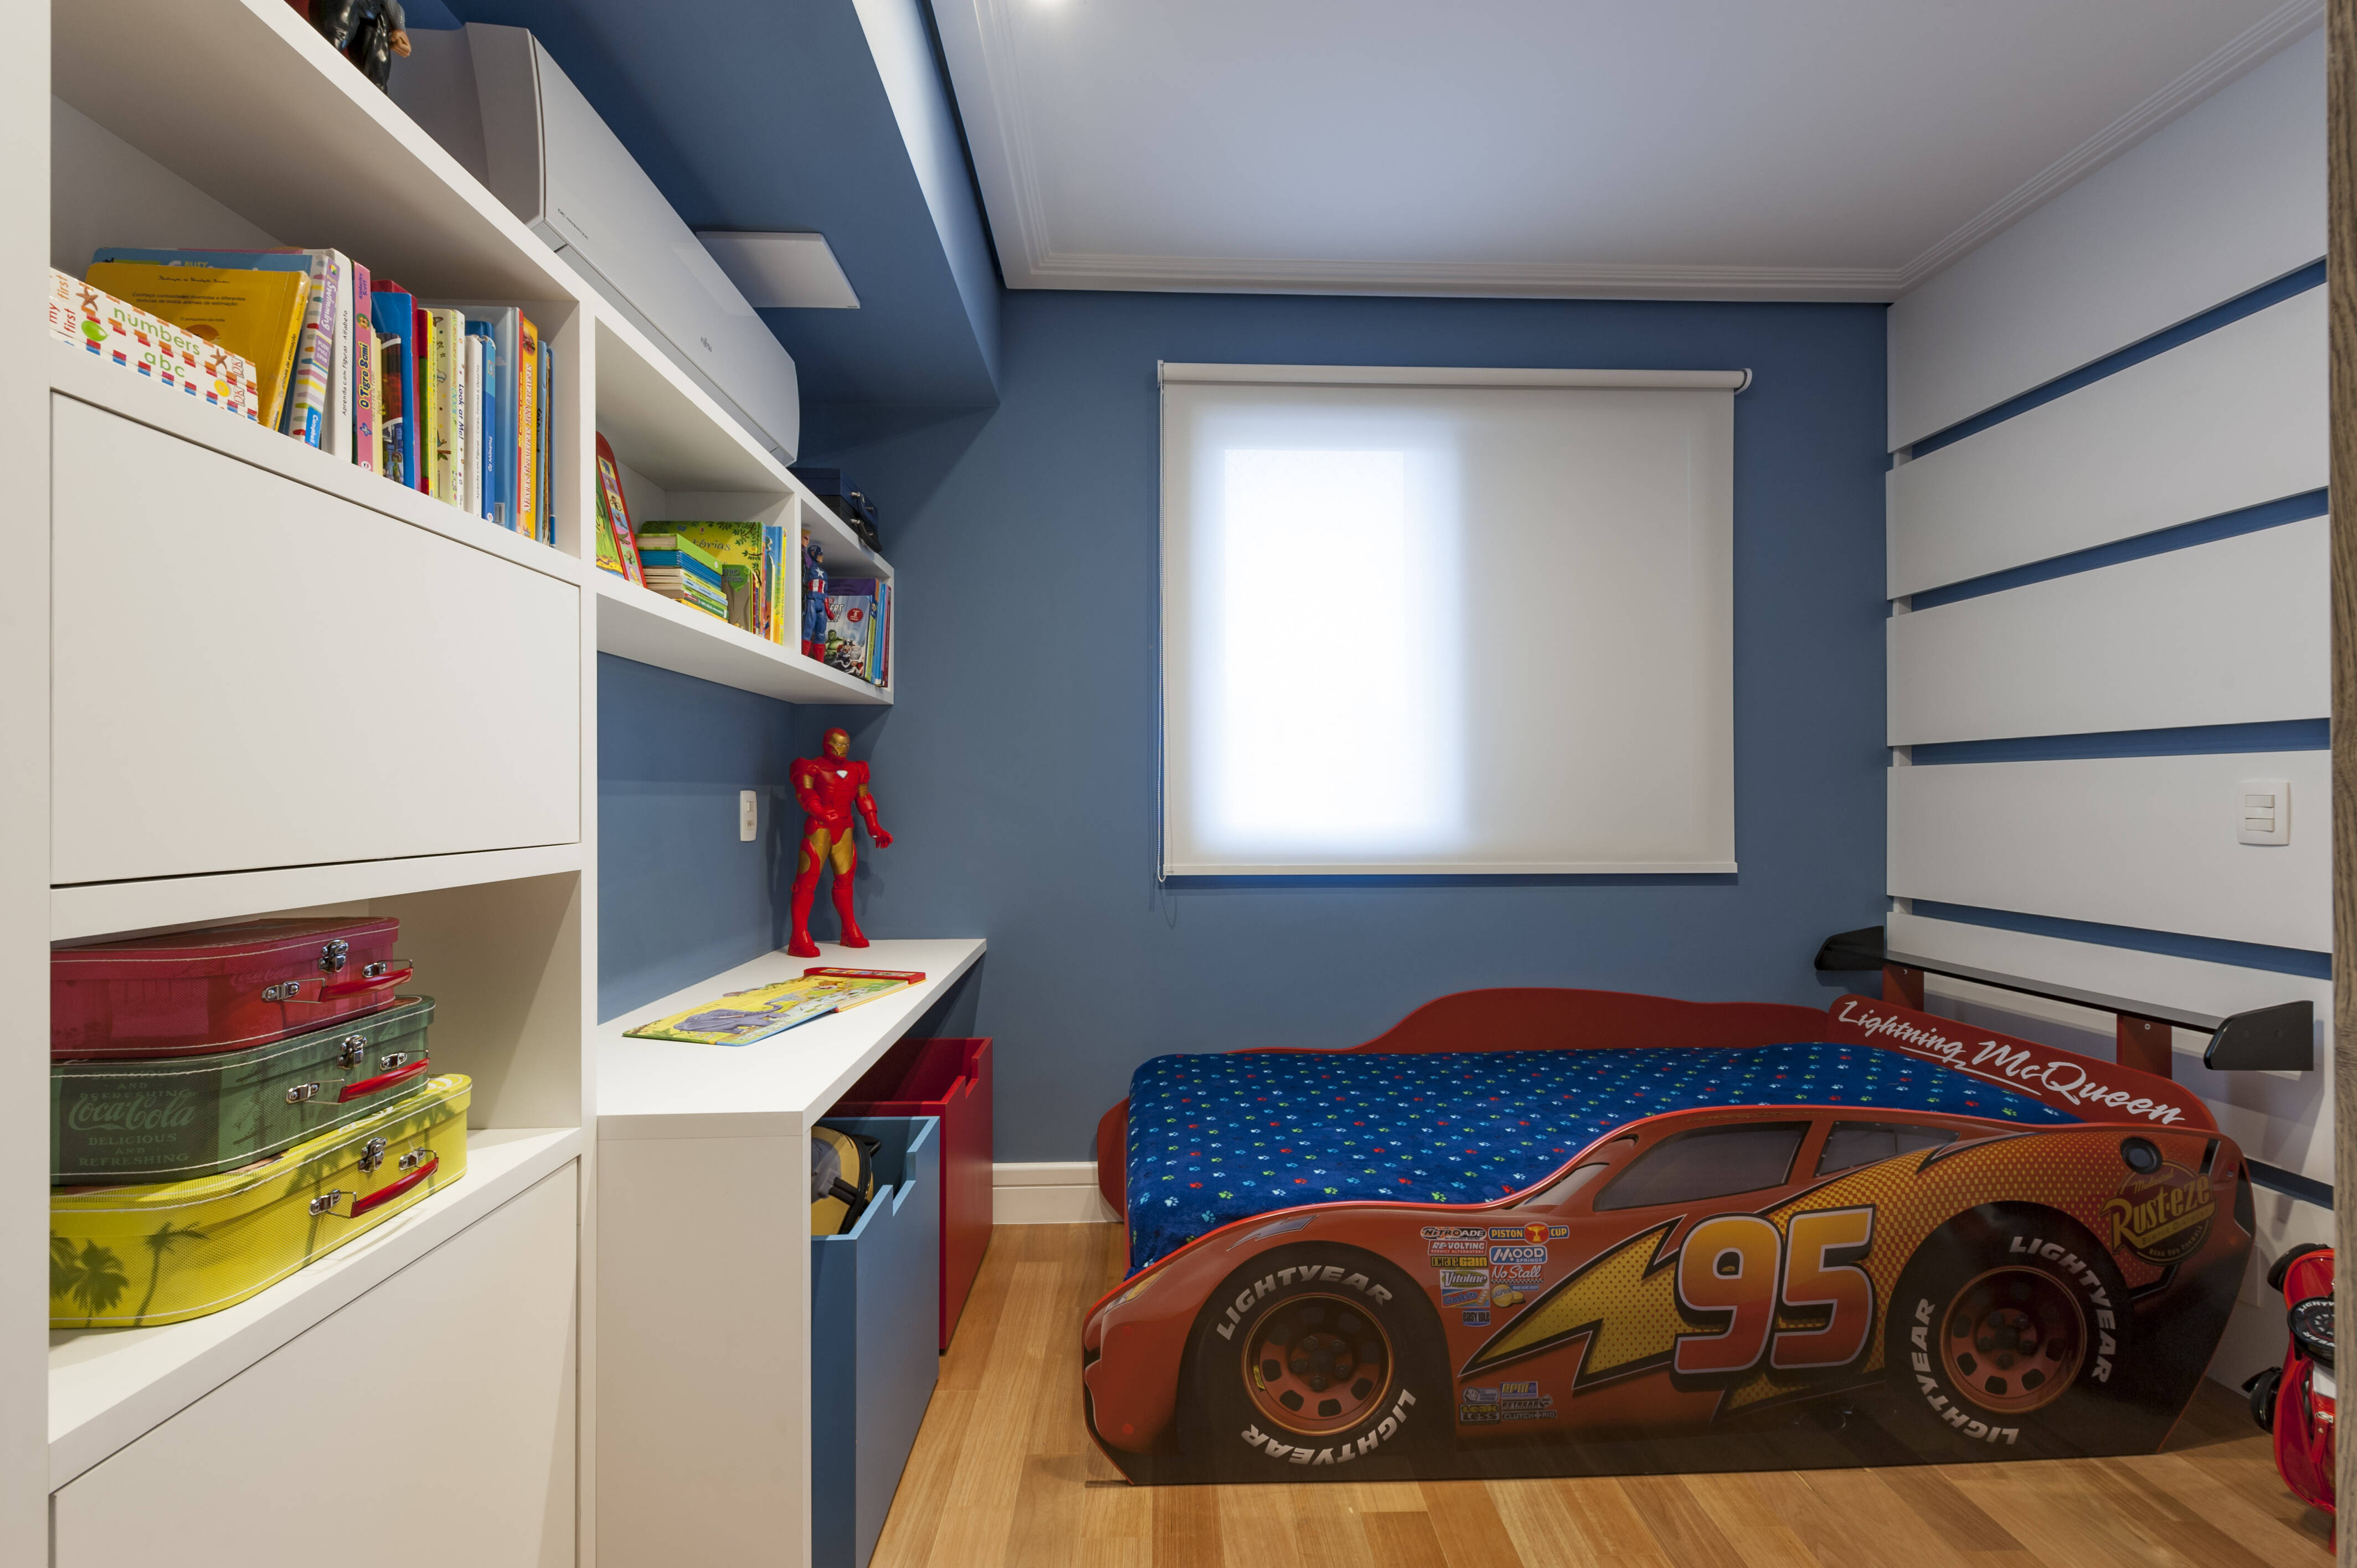 Este quarto de Cristiane Schiavoni foi decorado com livros e bonecos do morador; a cama que faz referência ao personagem Relâmpago McQueen, do filme Carros, é um charme a parte. Foto: Carlos Piratininga